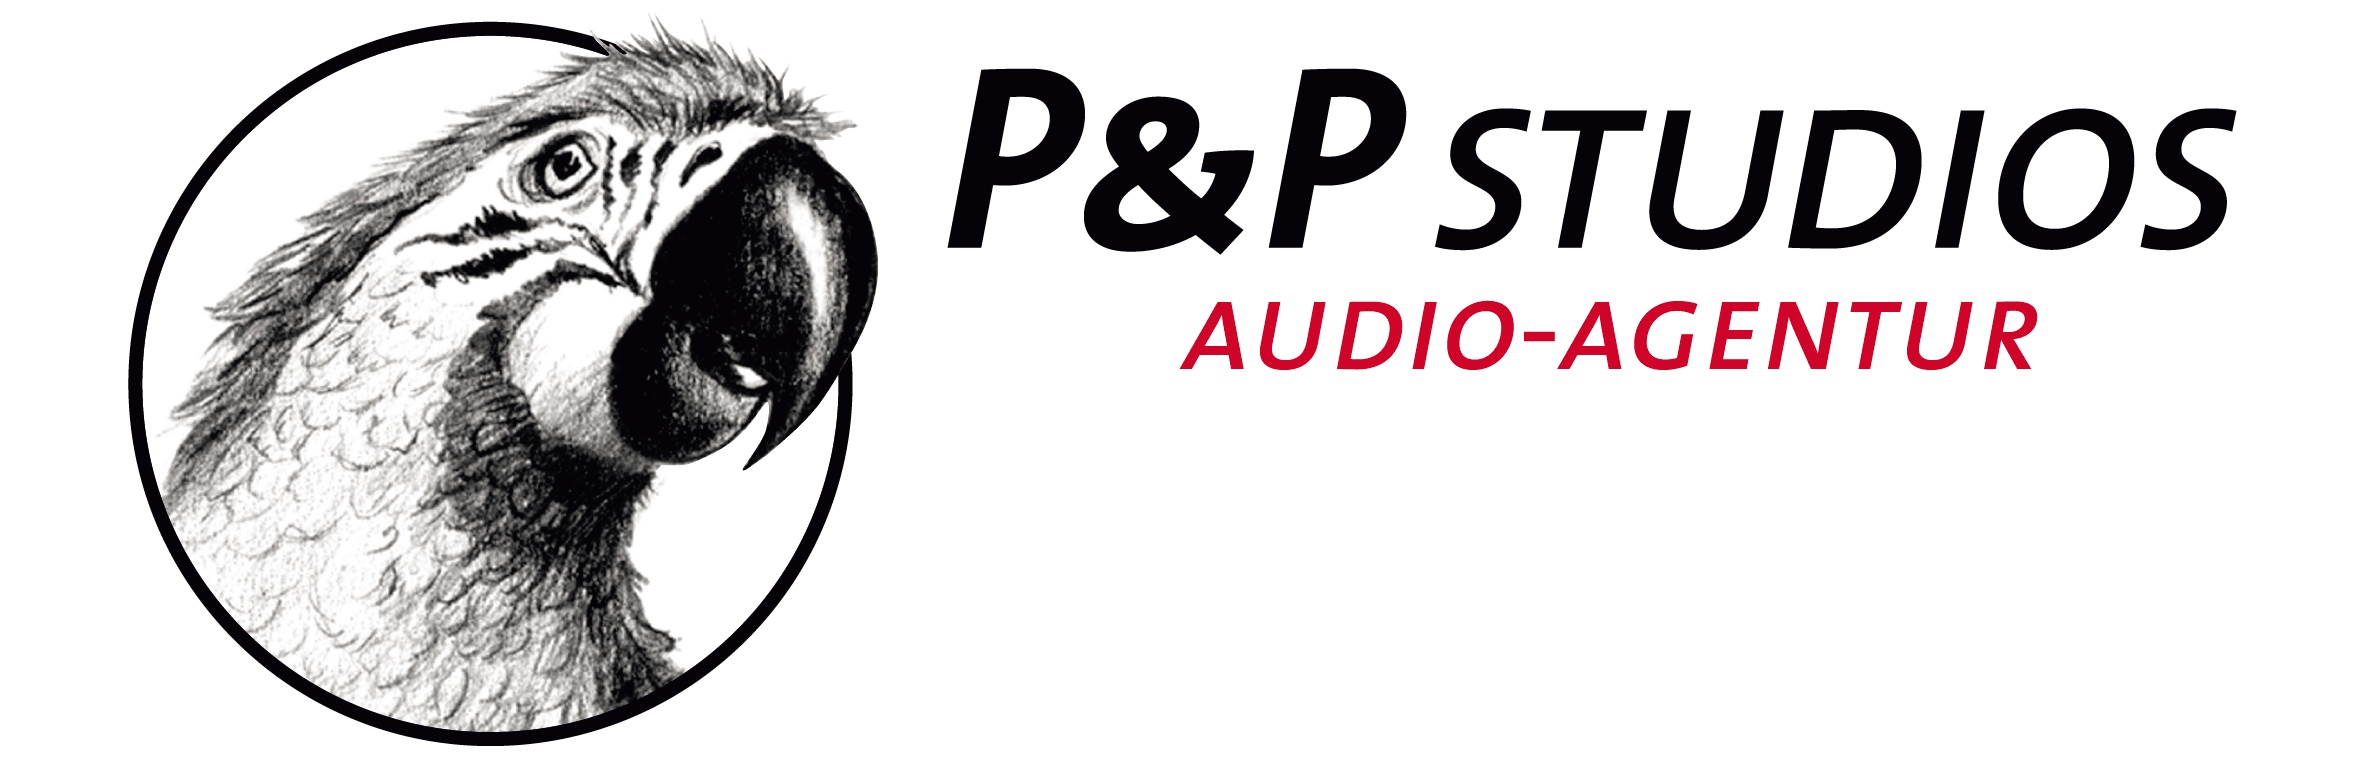 P&P Studios